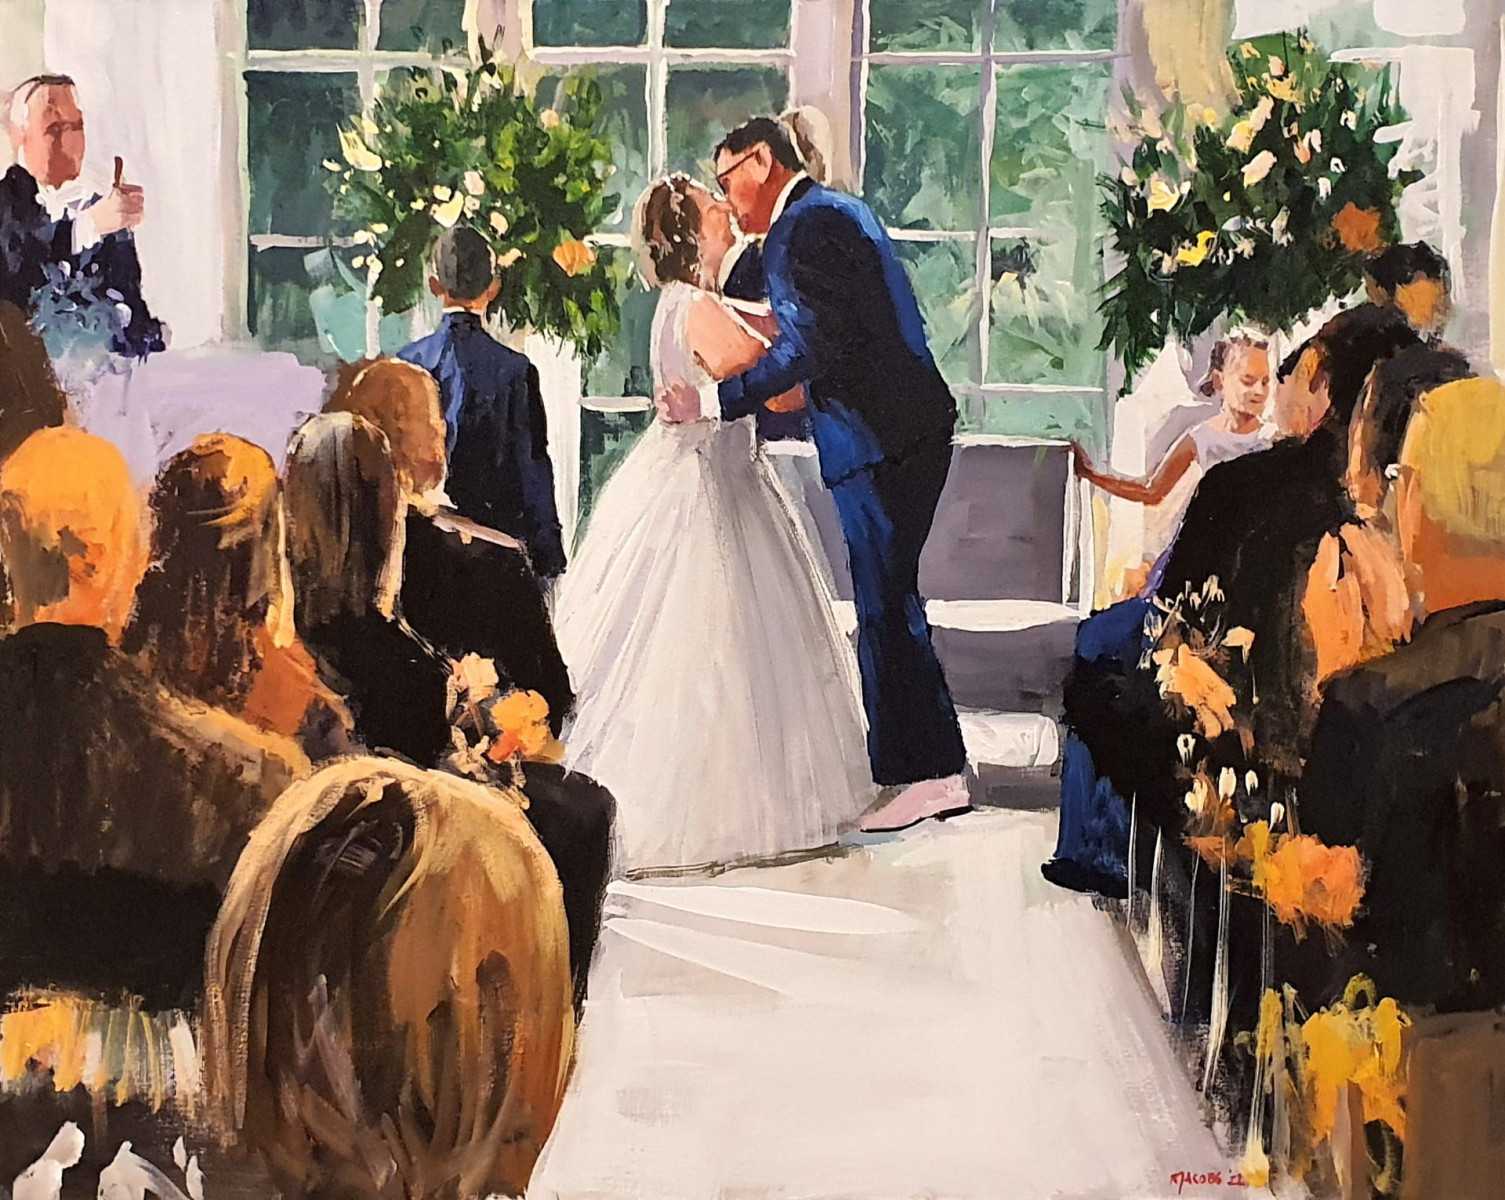 Geniet van de liefdevolle momenten terwijl Rob Jacobs live schildert tijdens de betoverende trouwceremonie in Zeist.